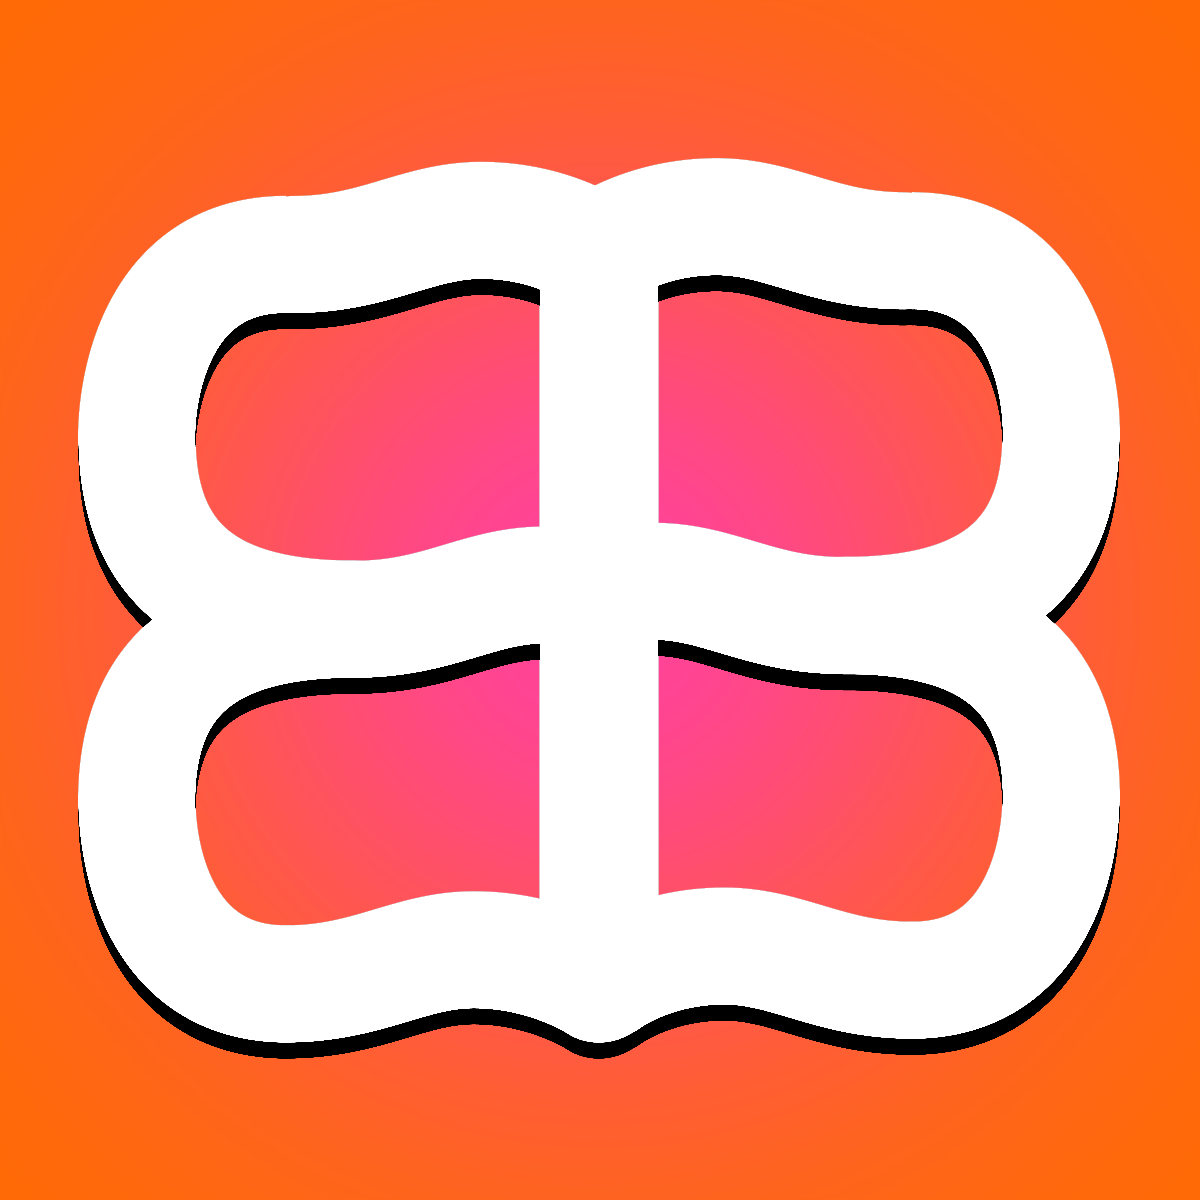 Bravo Blog ‑ SEO Formatting for Shopify